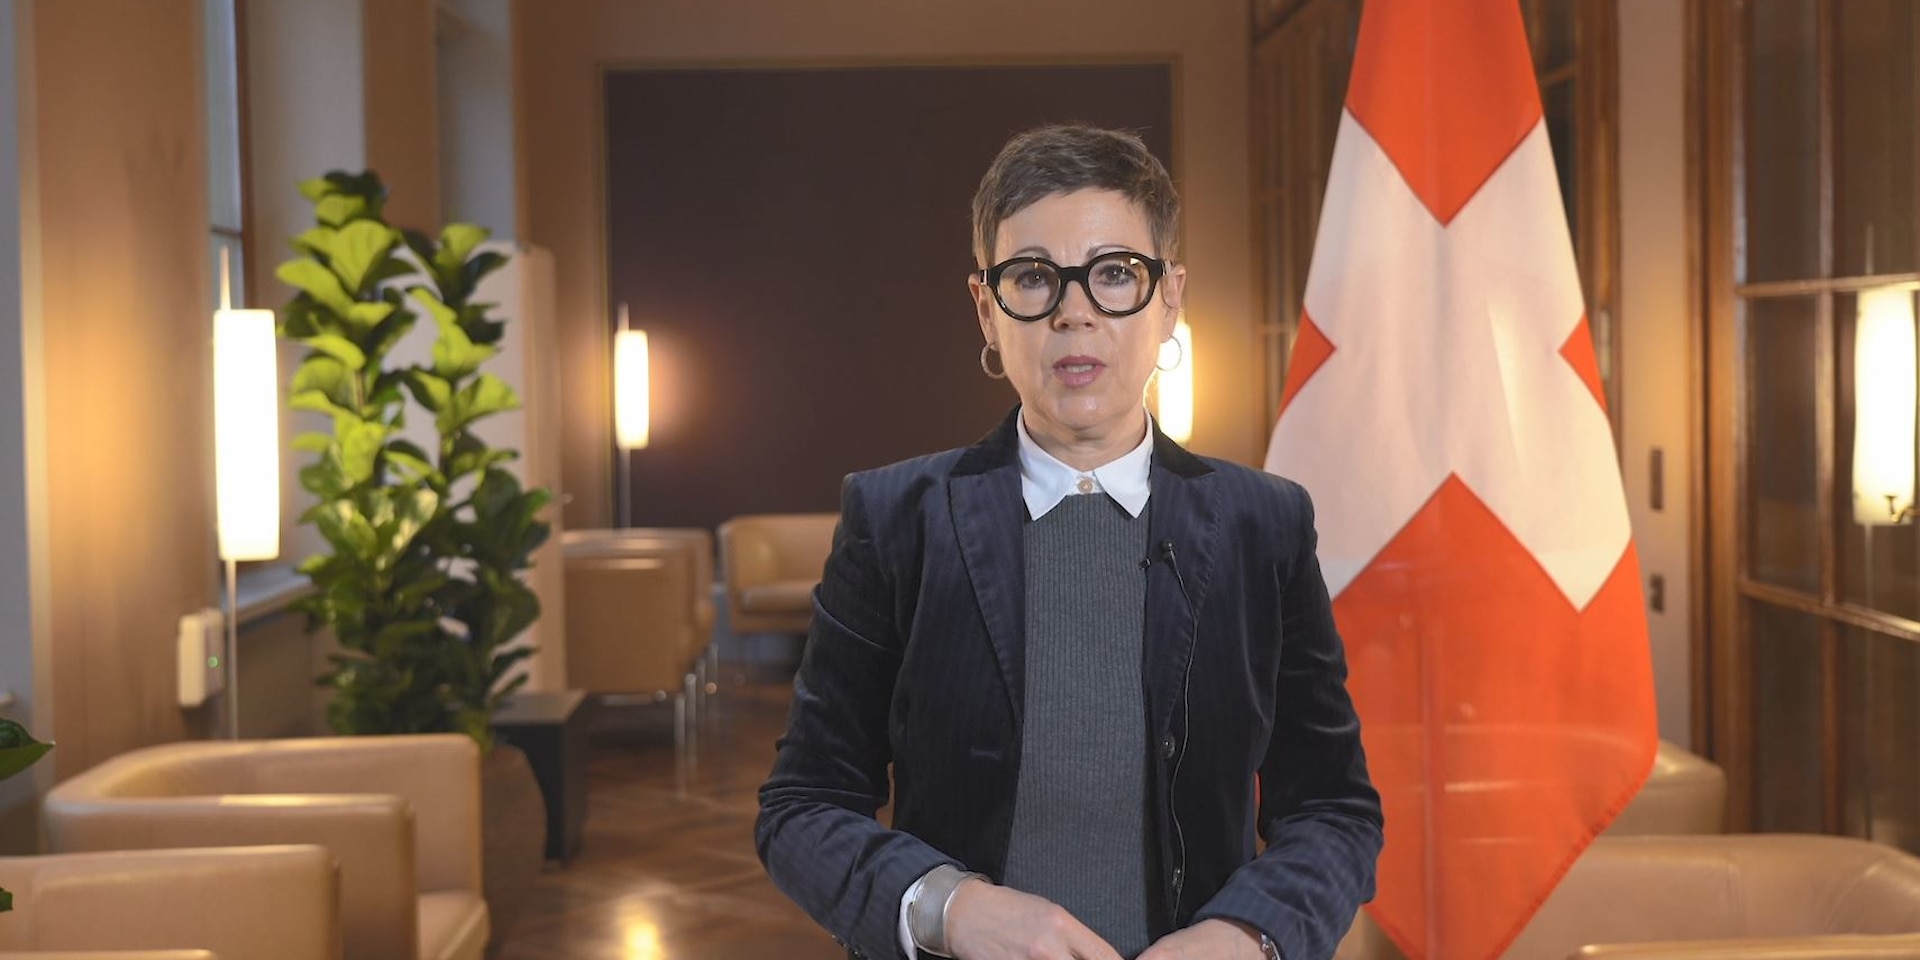 La secrétaire d'État du DFAE Krystyna Marty Lang se tient dans une salle lambrissée et parle devant une caméra. On peut voir le drapeau de la Suisse en arrière-plan.